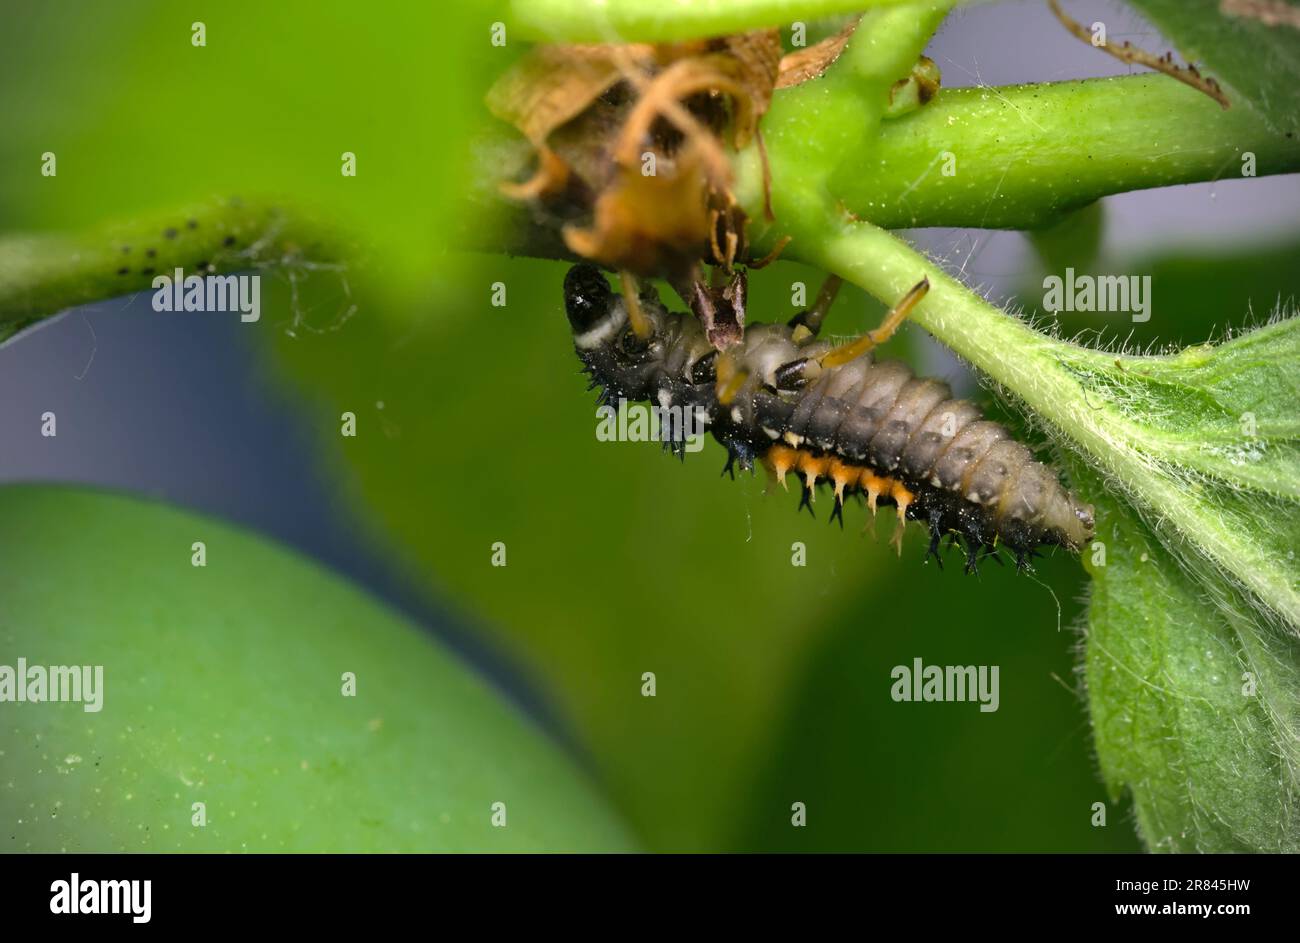 Larve einer asiatischen Käferin (Harmonia axyridis), die auf einer Pflanze krabbelt, Makrofotografie, Insekten, Nahaufnahme, Natur, Biologische Vielfalt Stockfoto